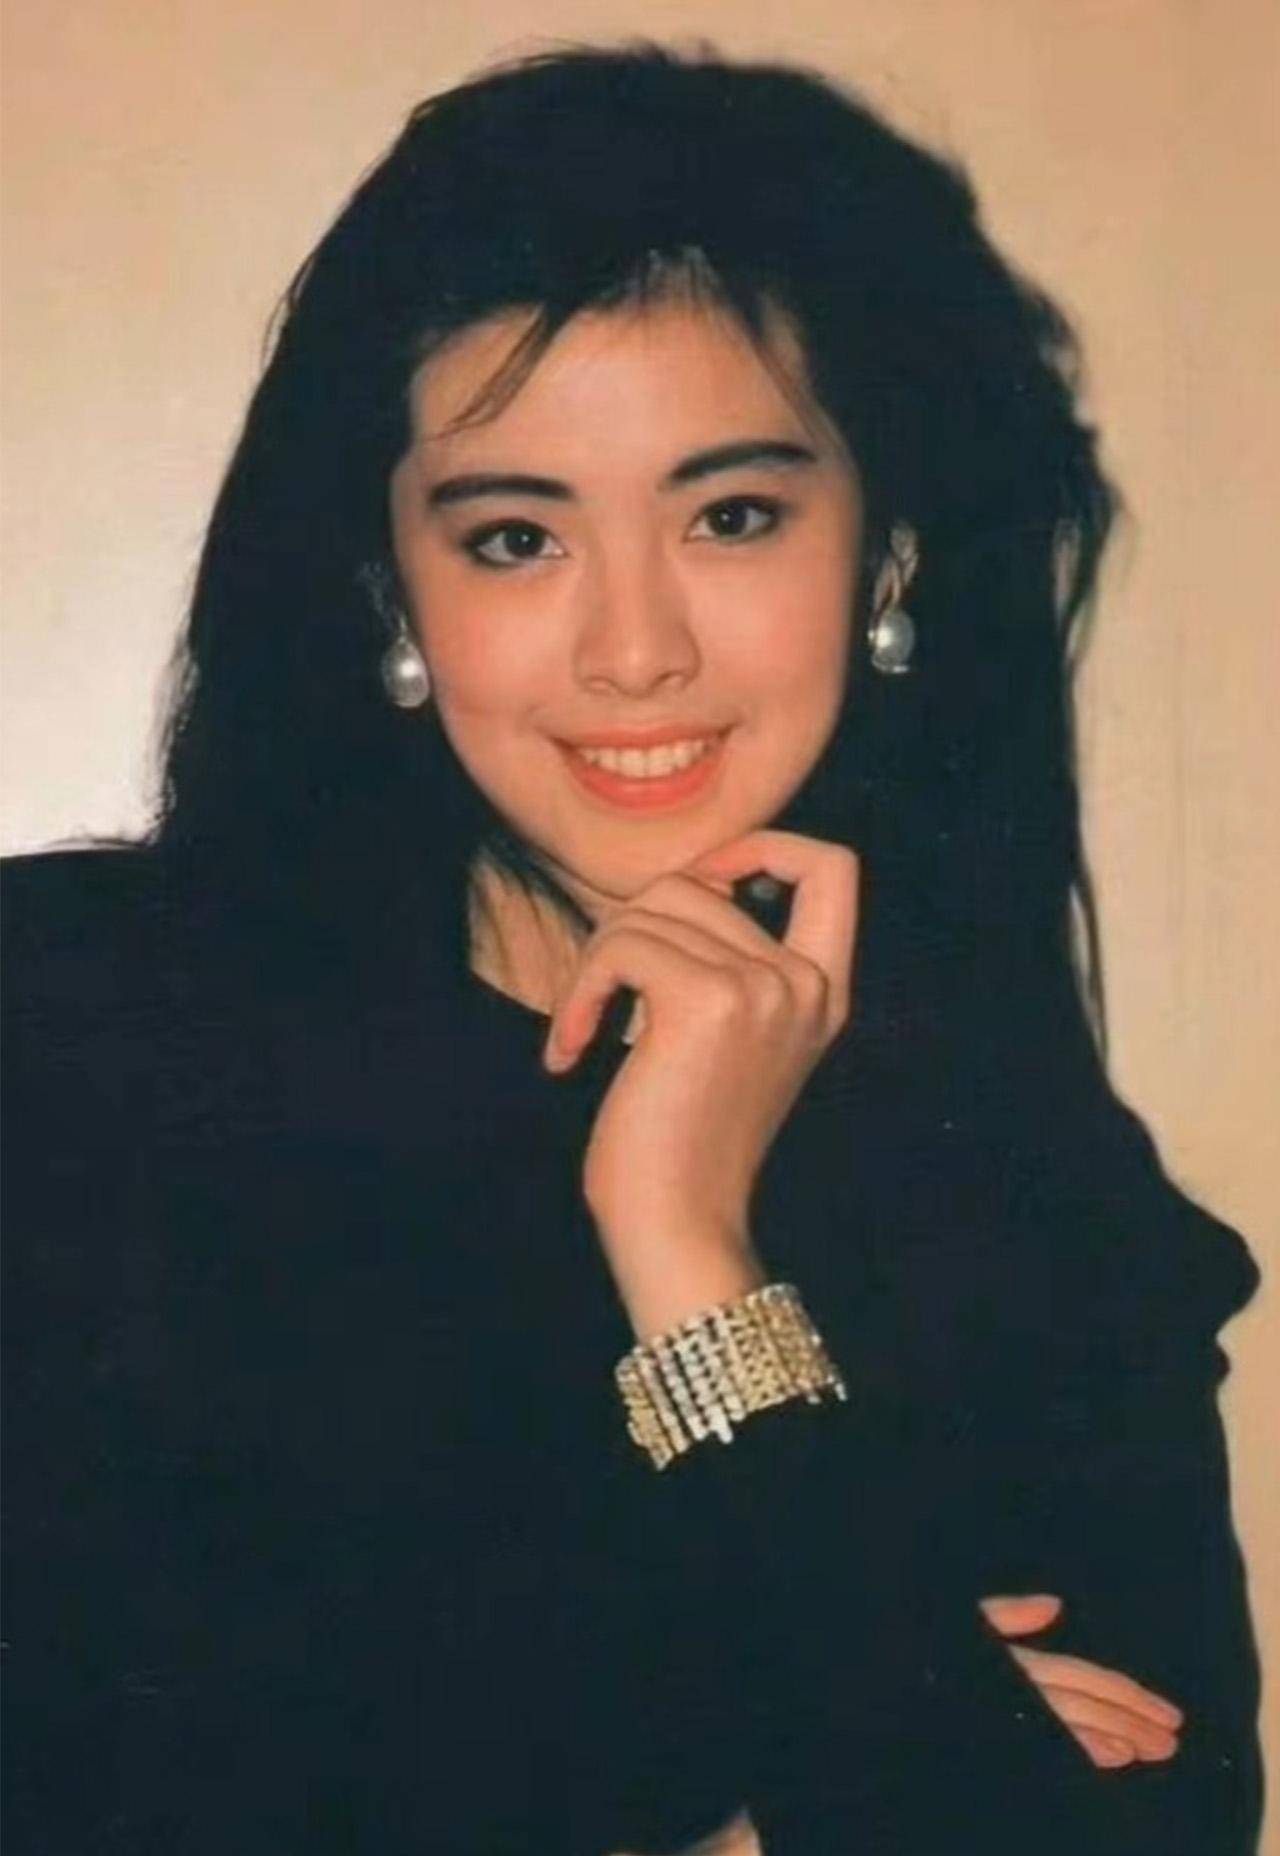 也是90年代之中,香港演艺圈中最红的女明星,除了颜值之外,王祖贤的演